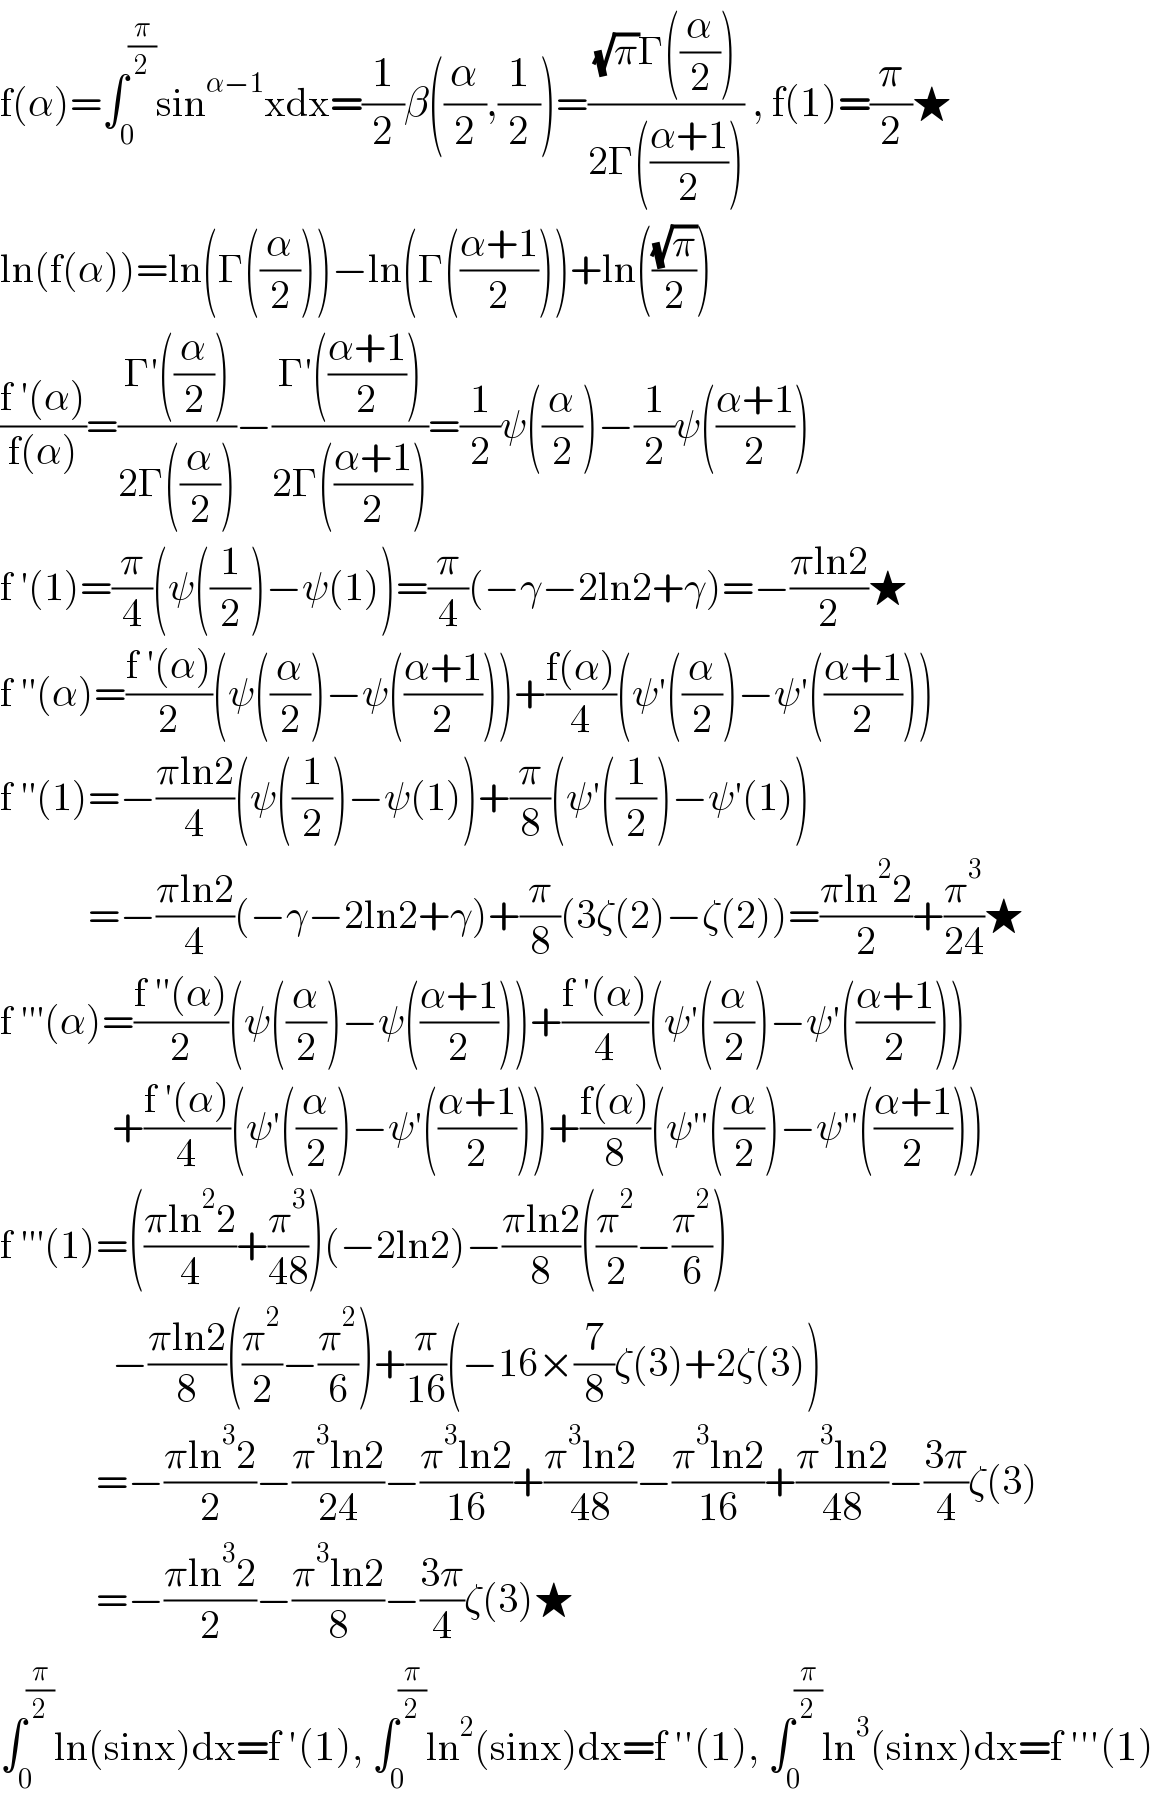 f(α)=∫_0 ^(π/2) sin^(α−1) xdx=(1/2)β((α/2),(1/2))=(((√π)Γ((α/2)))/(2Γ(((α+1)/2)))) , f(1)=(π/2)★  ln(f(α))=ln(Γ((α/2)))−ln(Γ(((α+1)/2)))+ln(((√π)/2))  ((f ′(α))/(f(α)))=((Γ′((α/2)))/(2Γ((α/2))))−((Γ′(((α+1)/2)))/(2Γ(((α+1)/2))))=(1/2)ψ((α/2))−(1/2)ψ(((α+1)/2))  f ′(1)=(π/4)(ψ((1/2))−ψ(1))=(π/4)(−γ−2ln2+γ)=−((πln2)/2)★  f ′′(α)=((f ′(α))/2)(ψ((α/2))−ψ(((α+1)/2)))+((f(α))/4)(ψ′((α/2))−ψ′(((α+1)/2)))  f ′′(1)=−((πln2)/4)(ψ((1/2))−ψ(1))+(π/8)(ψ′((1/2))−ψ′(1))             =−((πln2)/4)(−γ−2ln2+γ)+(π/8)(3ζ(2)−ζ(2))=((πln^2 2)/2)+(π^3 /(24))★  f ′′′(α)=((f ′′(α))/2)(ψ((α/2))−ψ(((α+1)/2)))+((f ′(α))/4)(ψ′((α/2))−ψ′(((α+1)/2)))                +((f ′(α))/4)(ψ′((α/2))−ψ′(((α+1)/2)))+((f(α))/8)(ψ′′((α/2))−ψ′′(((α+1)/2)))  f ′′′(1)=(((πln^2 2)/4)+(π^3 /(48)))(−2ln2)−((πln2)/8)((π^2 /2)−(π^2 /6))                −((πln2)/8)((π^2 /2)−(π^2 /6))+(π/(16))(−16×(7/8)ζ(3)+2ζ(3))              =−((πln^3 2)/2)−((π^3 ln2)/(24))−((π^3 ln2)/(16))+((π^3 ln2)/(48))−((π^3 ln2)/(16))+((π^3 ln2)/(48))−((3π)/4)ζ(3)              =−((πln^3 2)/2)−((π^3 ln2)/8)−((3π)/4)ζ(3)★  ∫_0 ^(π/2) ln(sinx)dx=f ′(1), ∫_0 ^(π/2) ln^2 (sinx)dx=f ′′(1), ∫_0 ^(π/2) ln^3 (sinx)dx=f ′′′(1)  